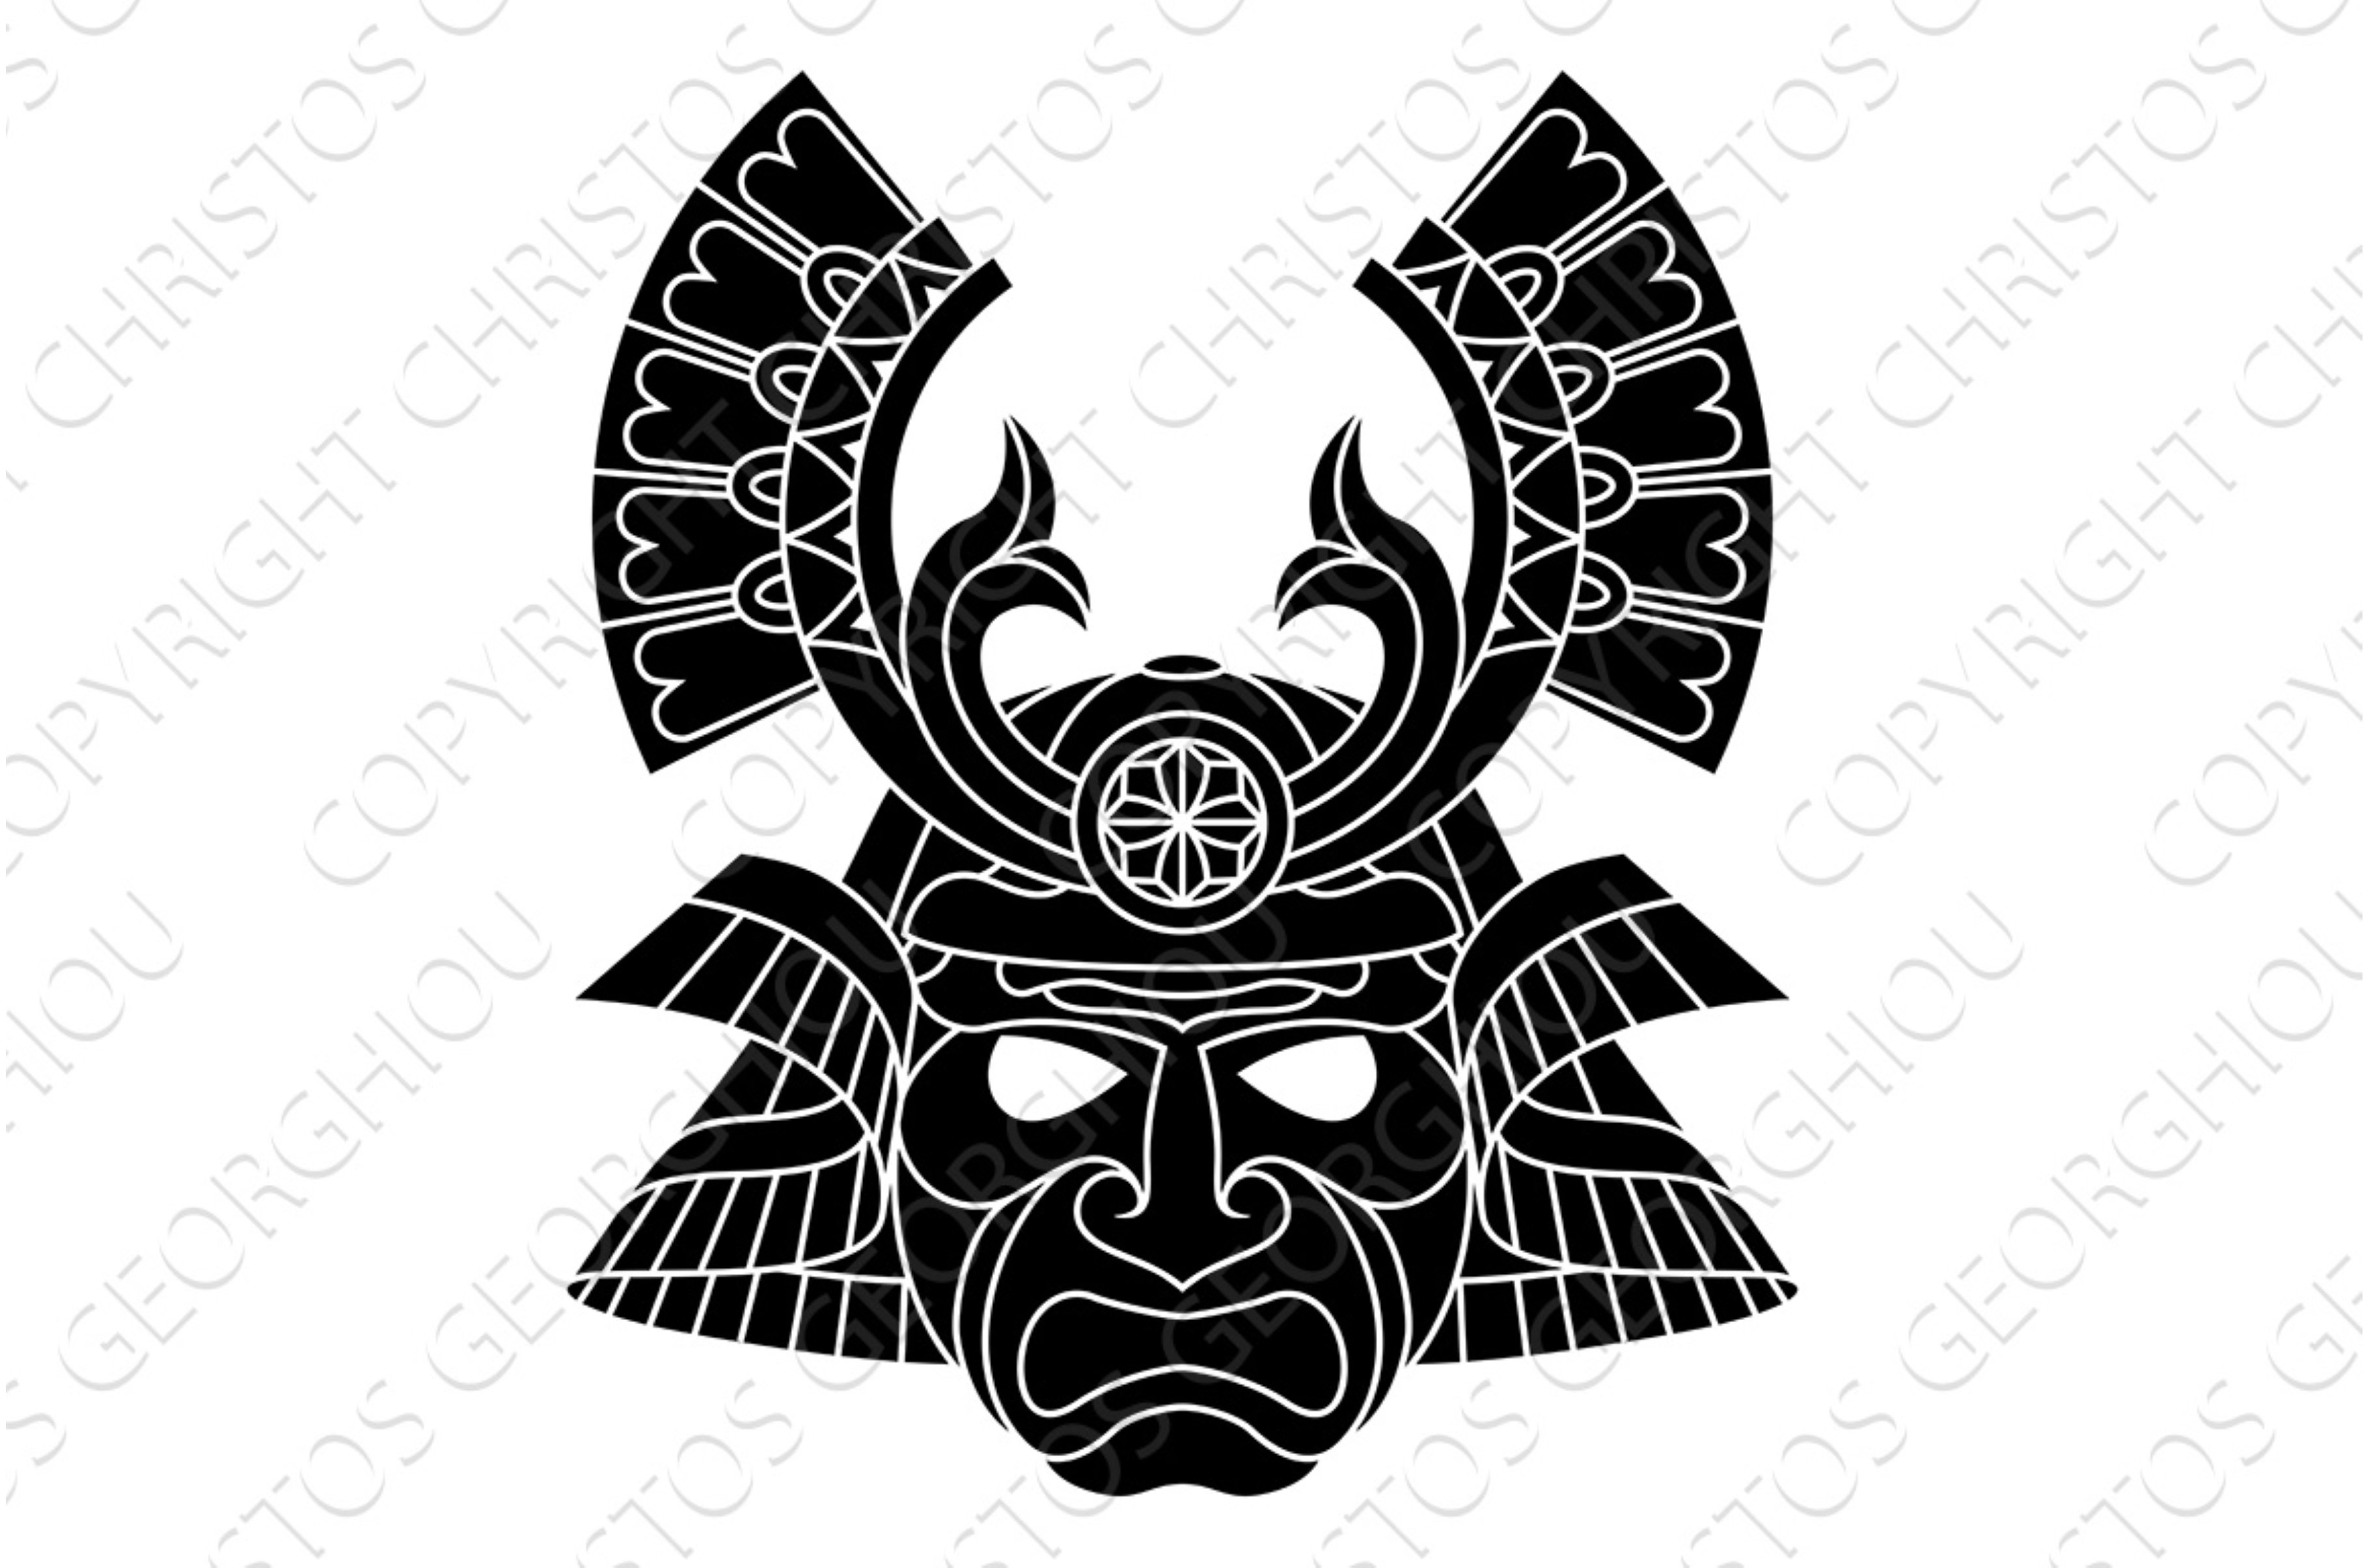 Samurai Mask Japanese Warrior Helmet cover image.